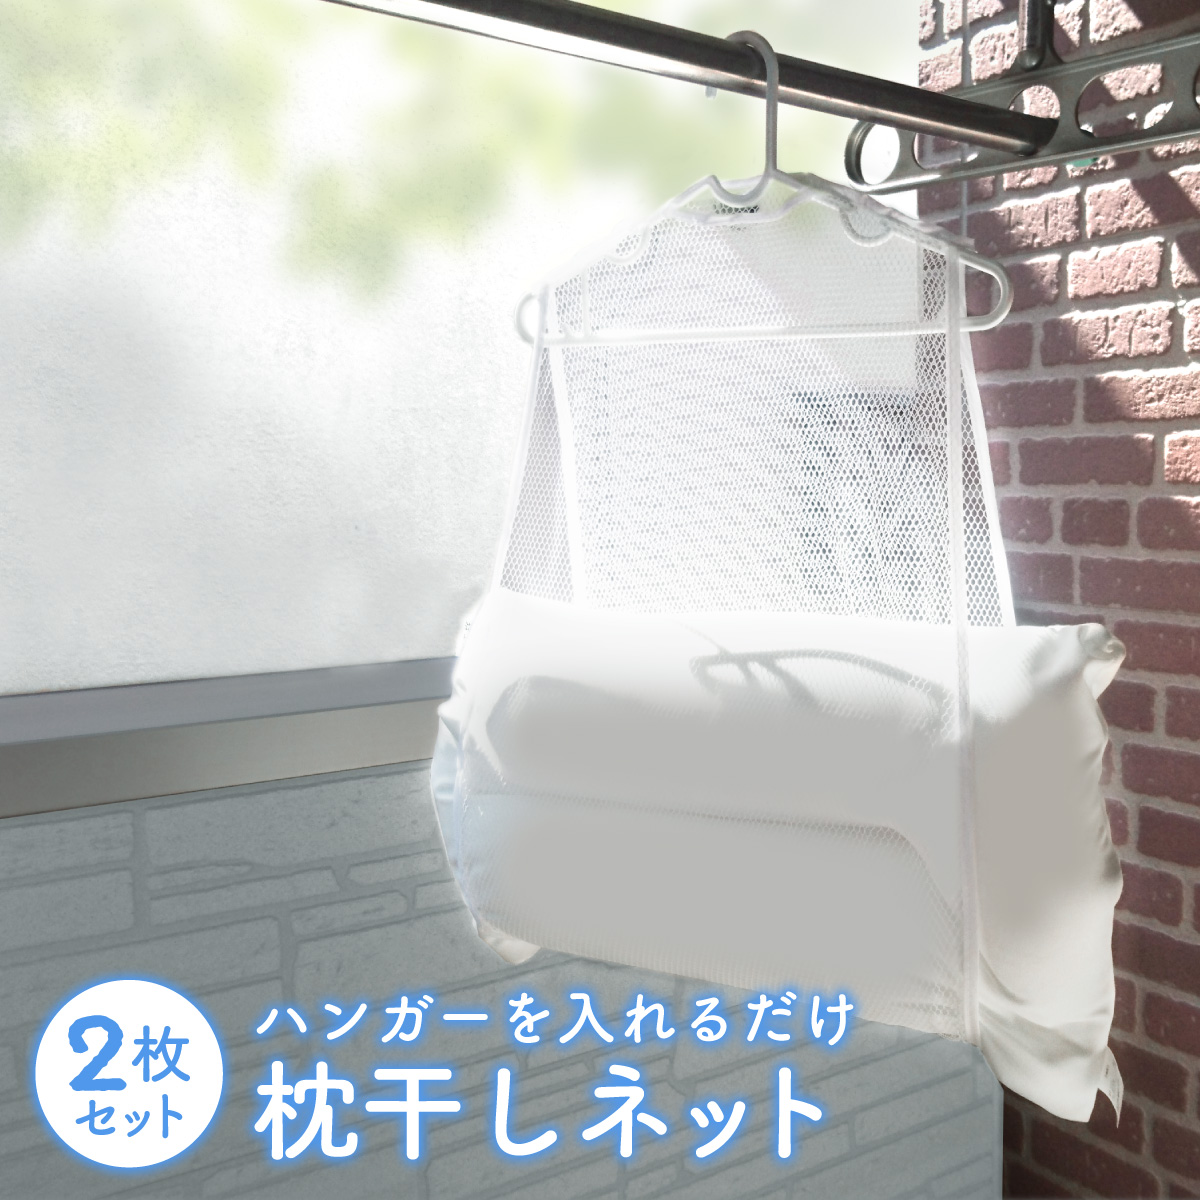 枕干しネット 2枚セット 枕 まくら ネット 物干し クッション ぬいぐるみ 新生活 makura-net